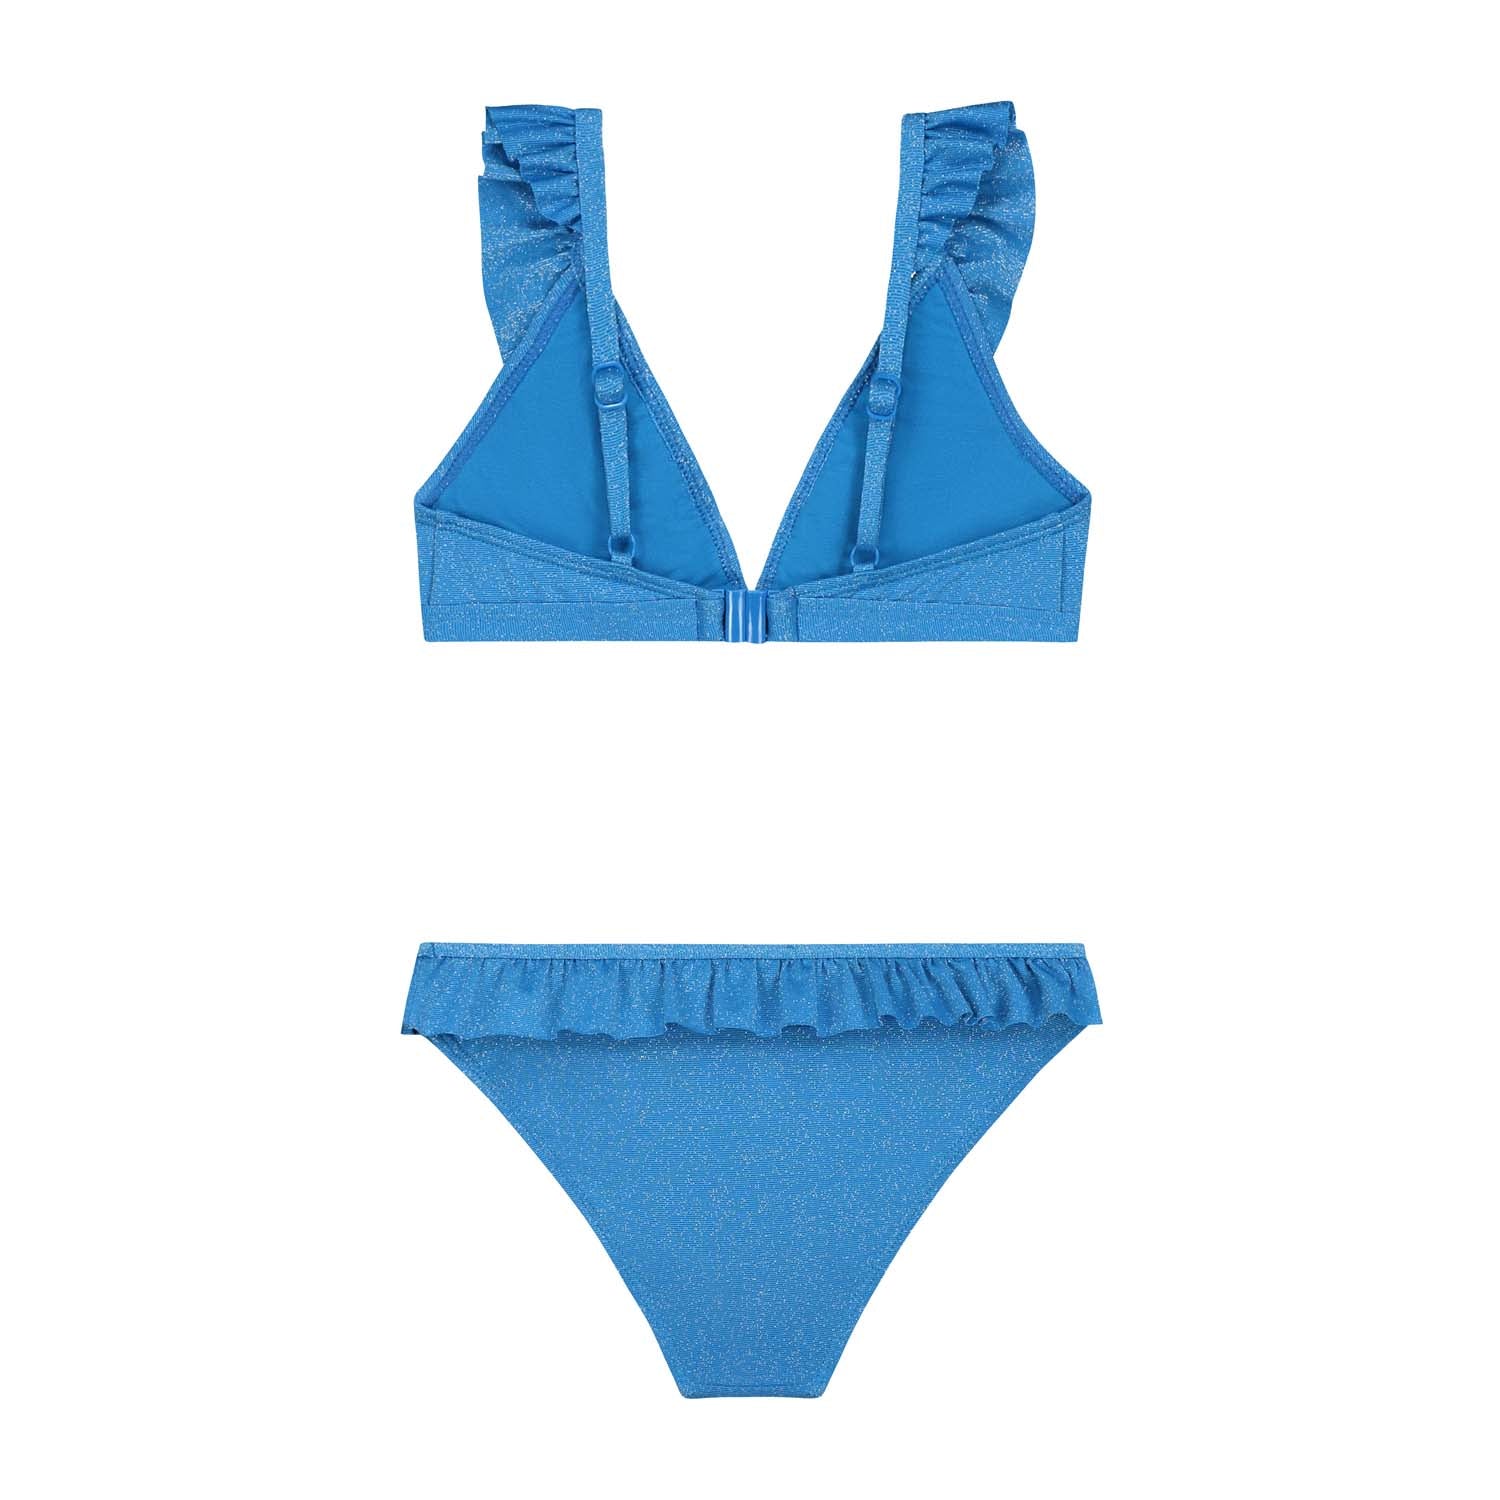 Meisjes BELLA bikini set SICILY GLITTER van Shiwi in de kleur sports blue in maat 170-176.